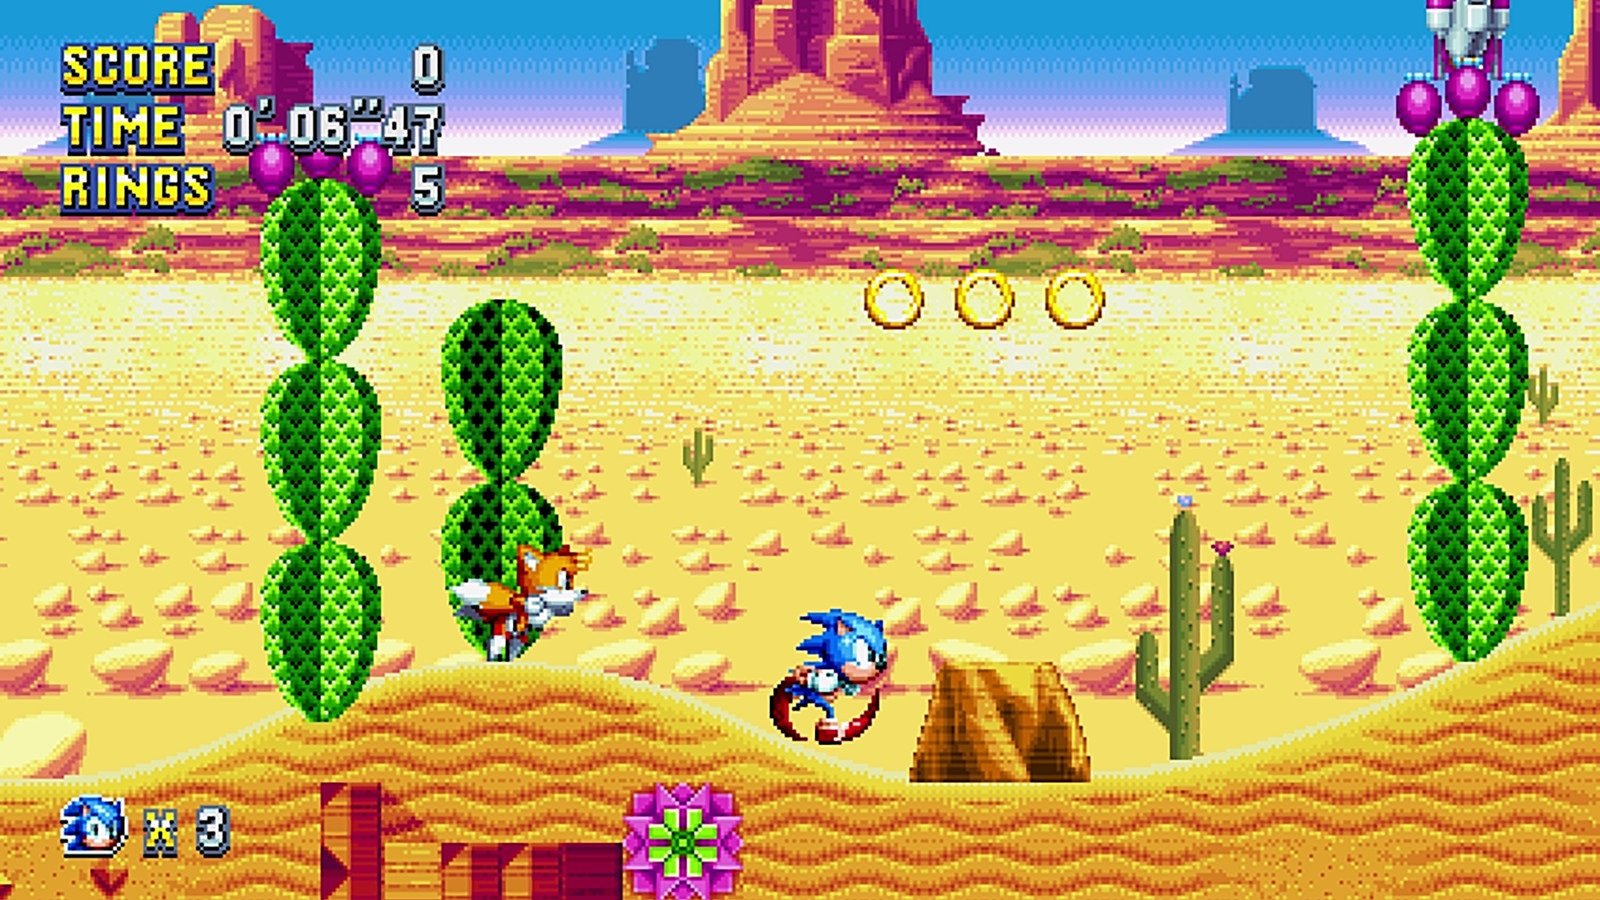 I'm still waiting for my fucking Sonic 06 Wii Port. : r/SonicTheHedgehog